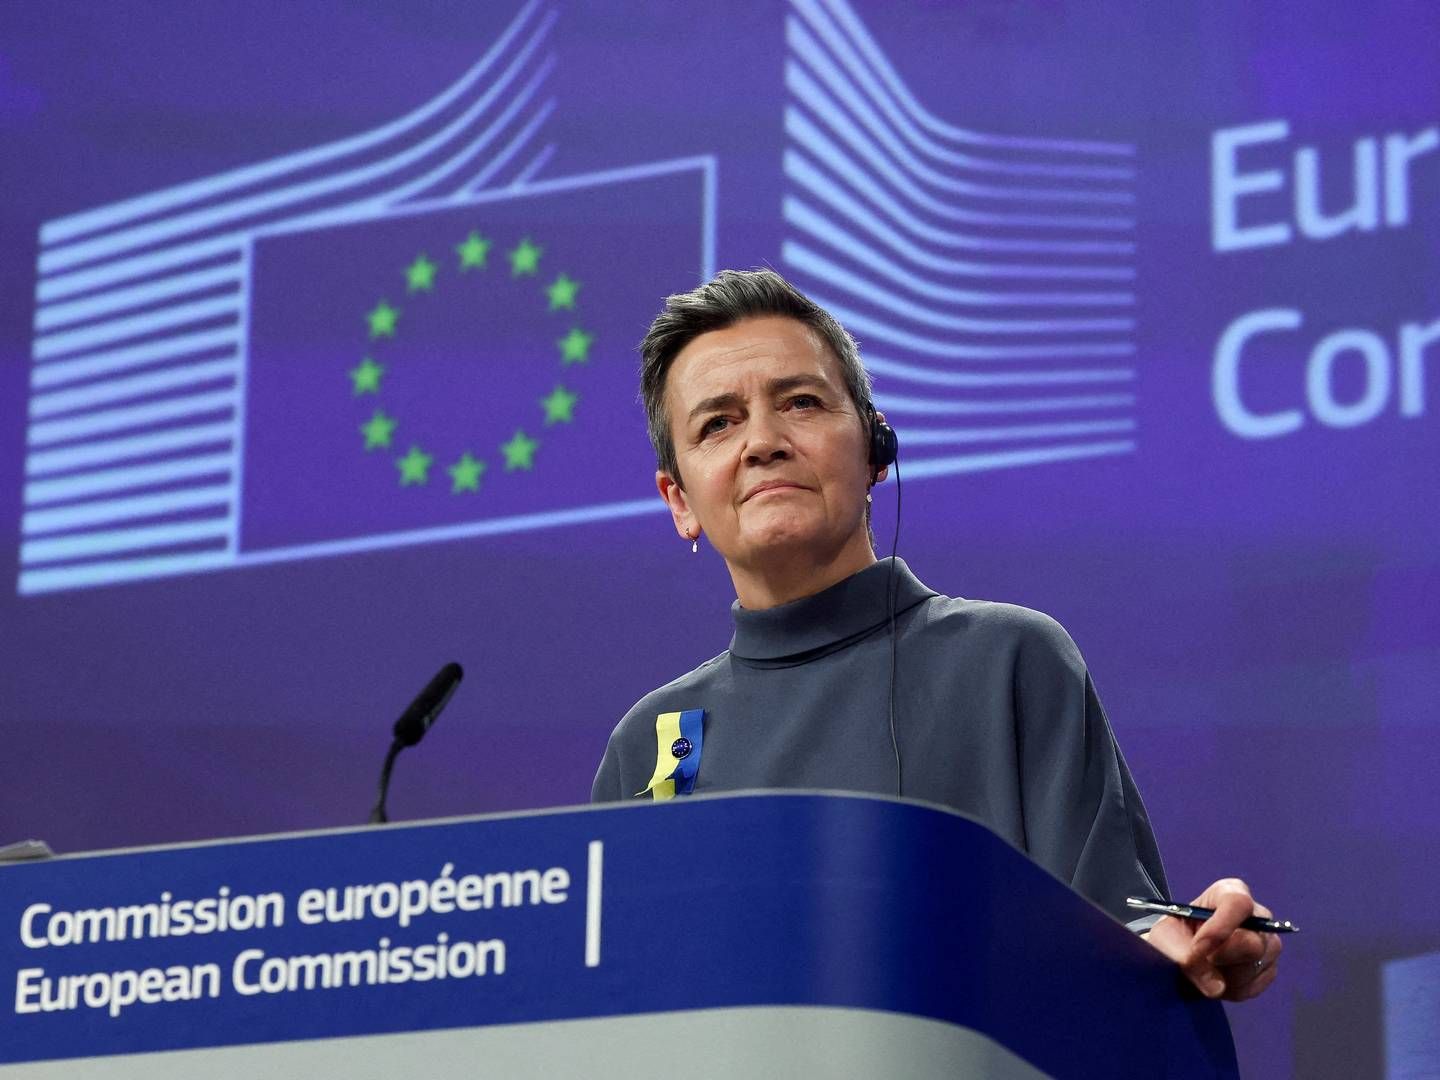 "Vi er kommet meget tættere på forretningsmodellen hos de virksomheder, som især er i søgelyset,” siger Margrethe Vestager, om ny EU-lov. | Foto: Yves Herman